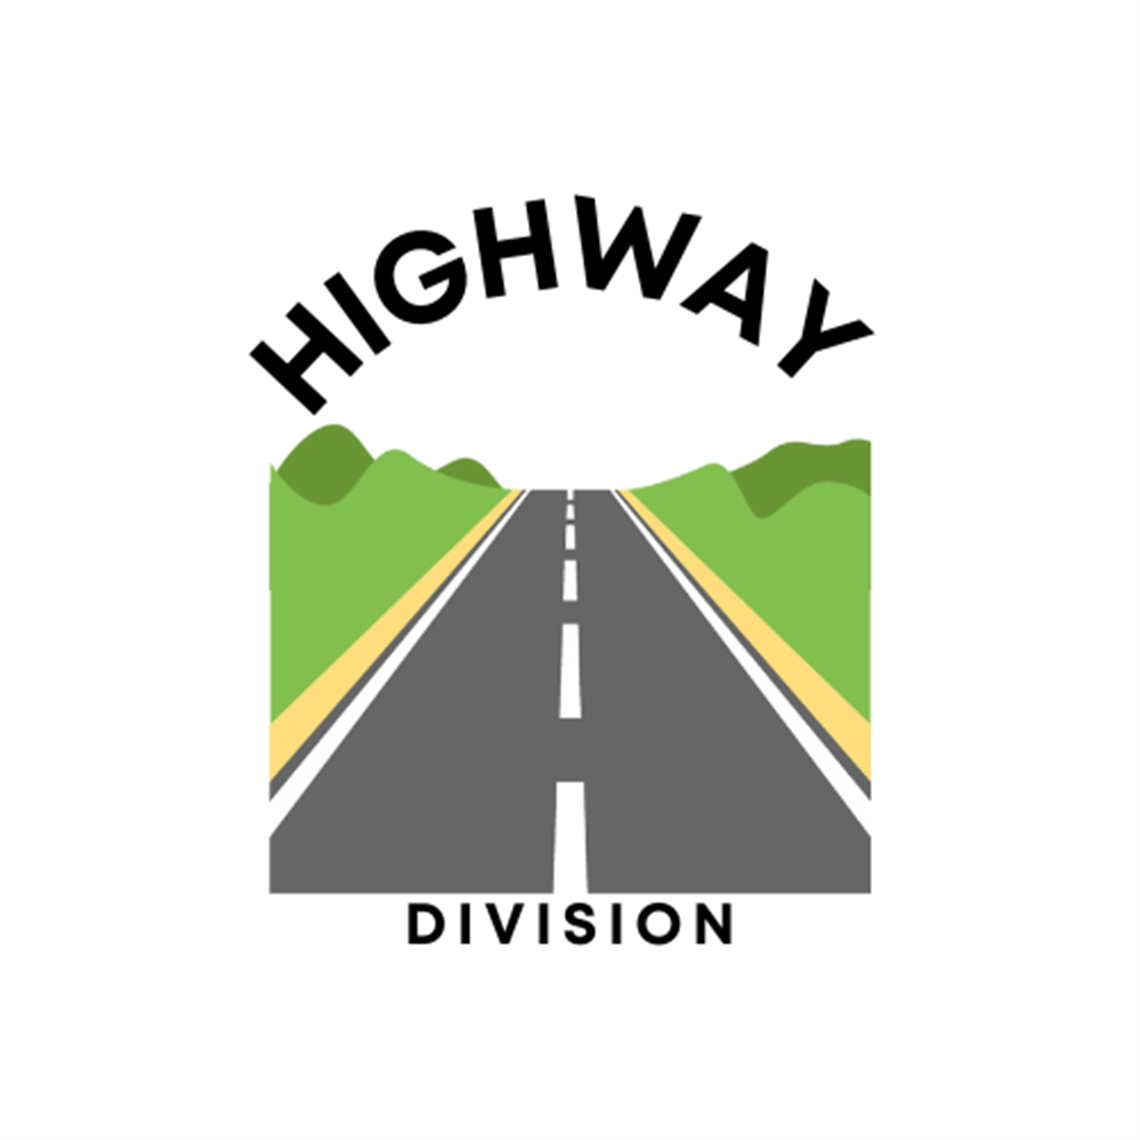 Highway Division logo.png